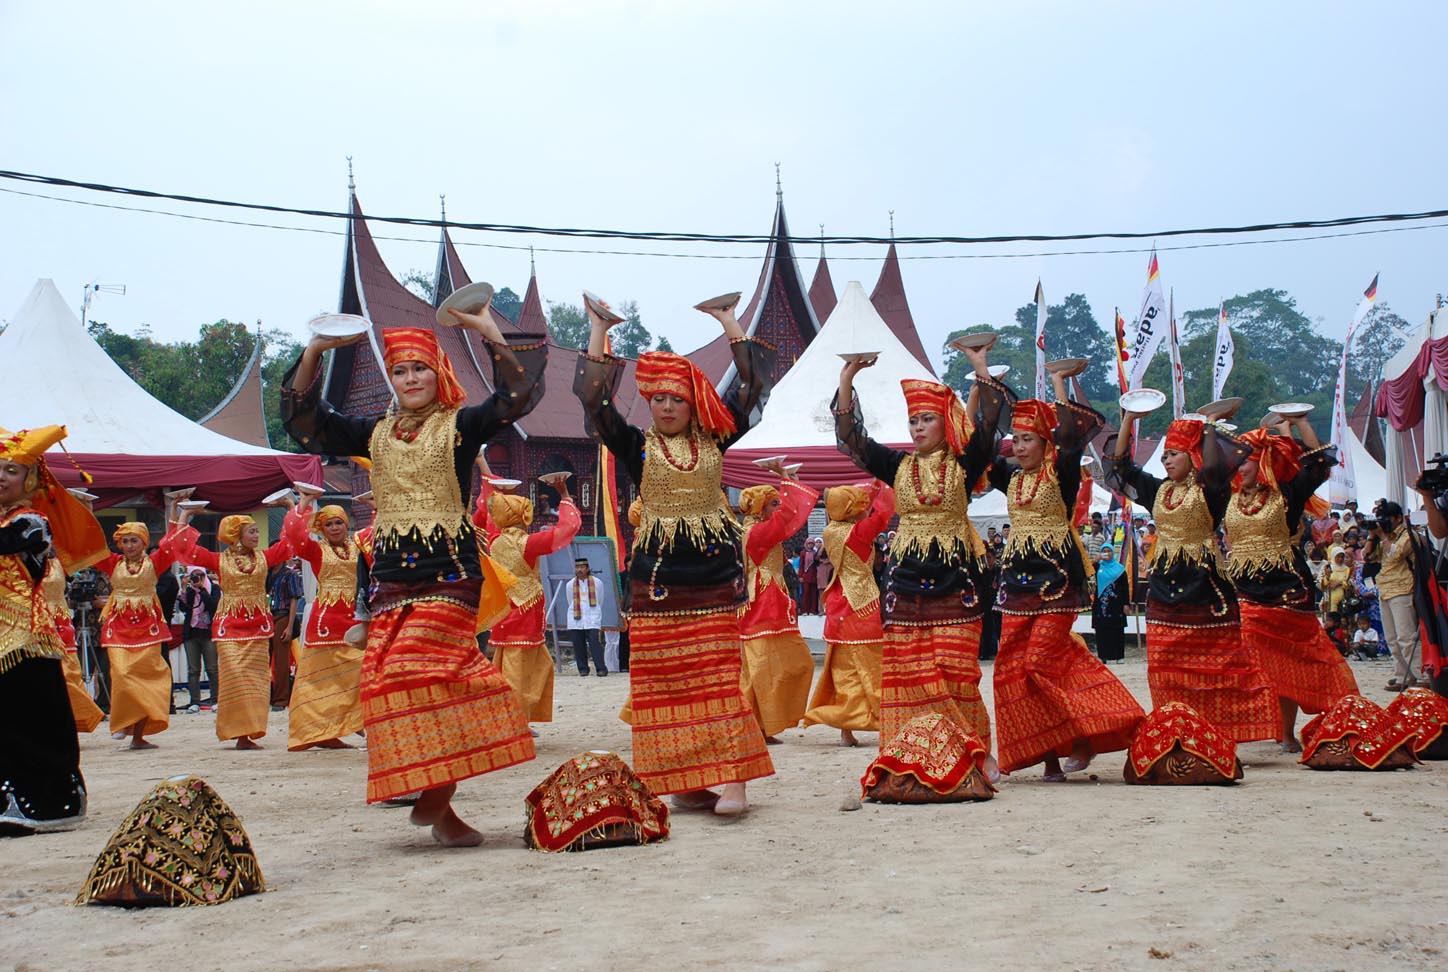 Kebudayaan Indonesia Indonesia Cultures amigostusiempre